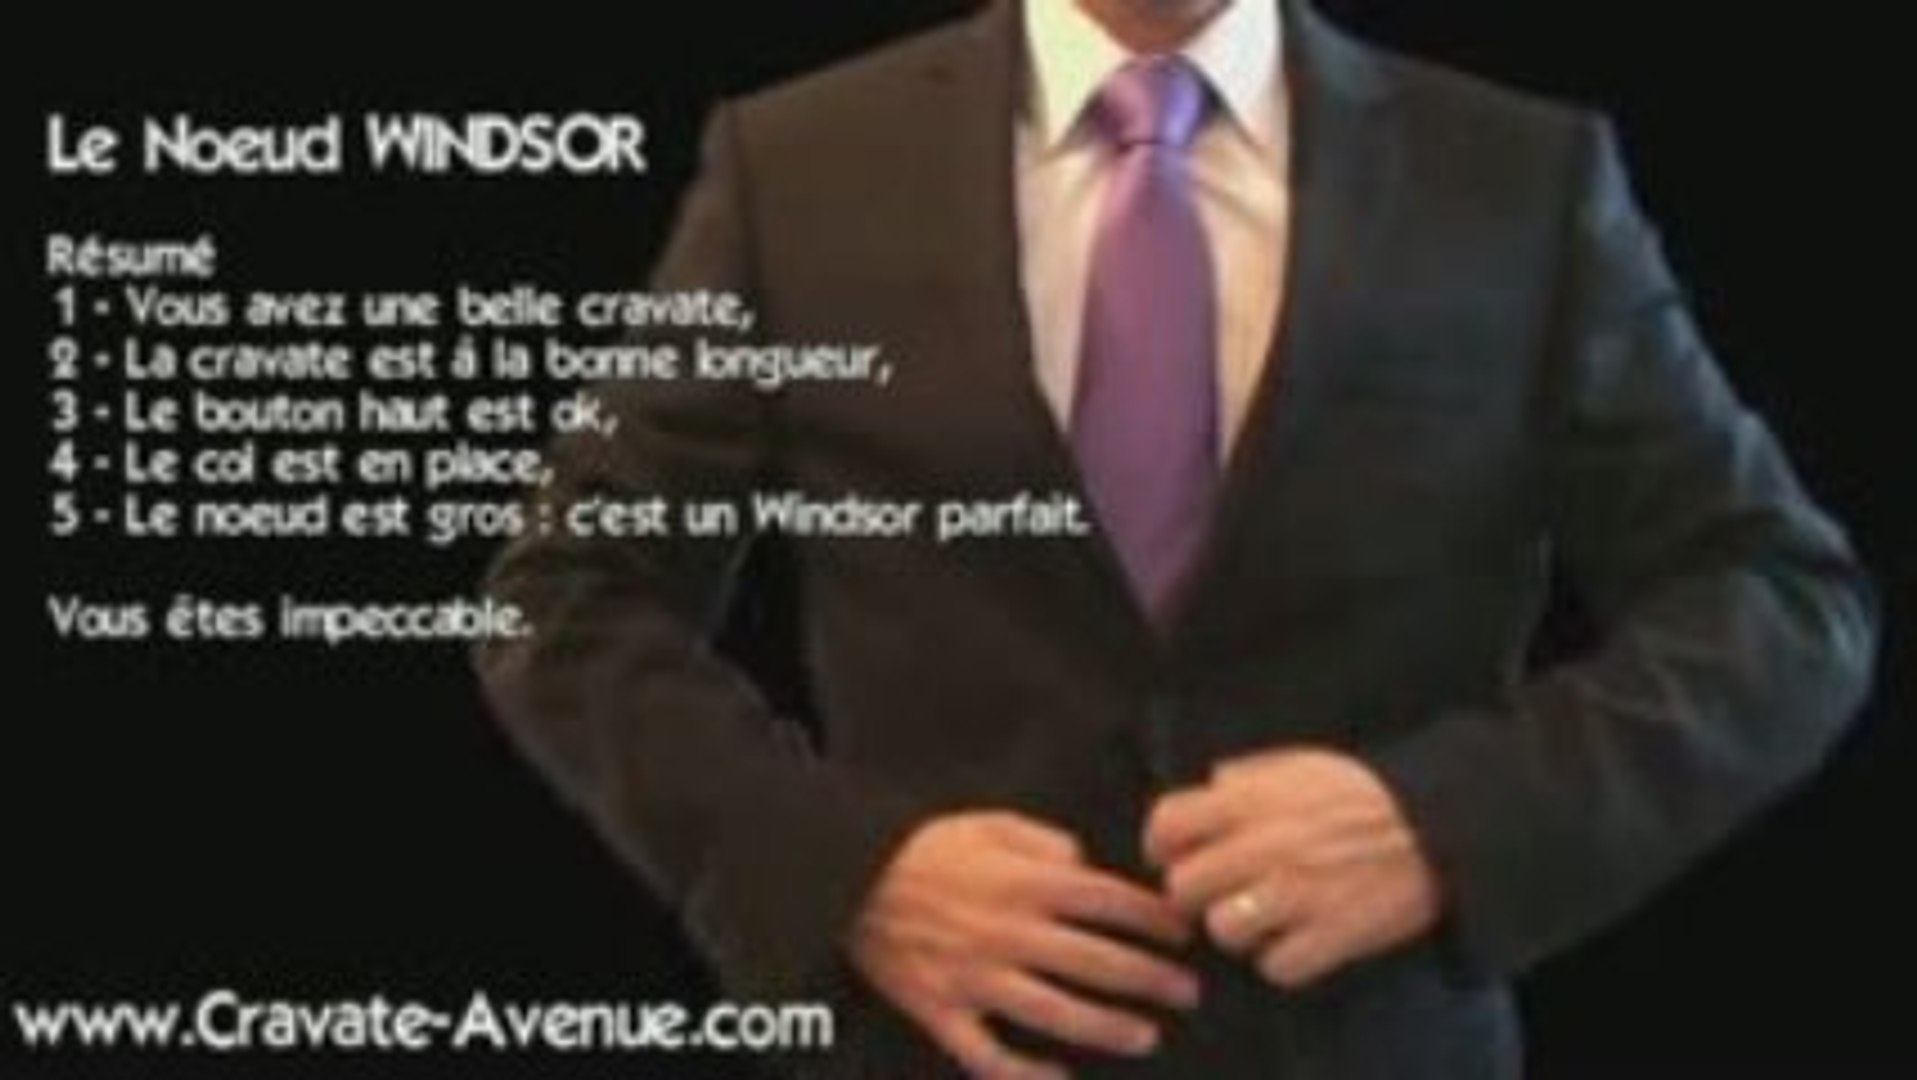 Le noeud de cravate Windsor - Faire un noeud de cravate - Vidéo Dailymotion